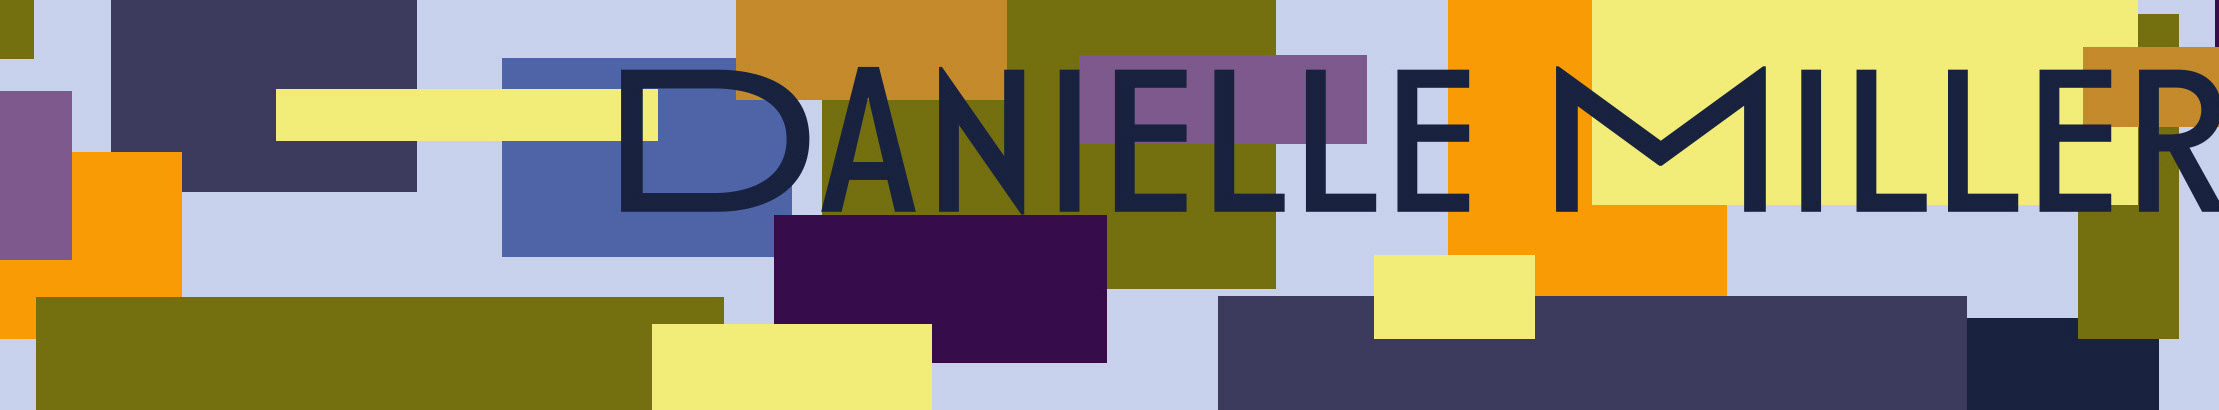 Danielle Miller's profile banner